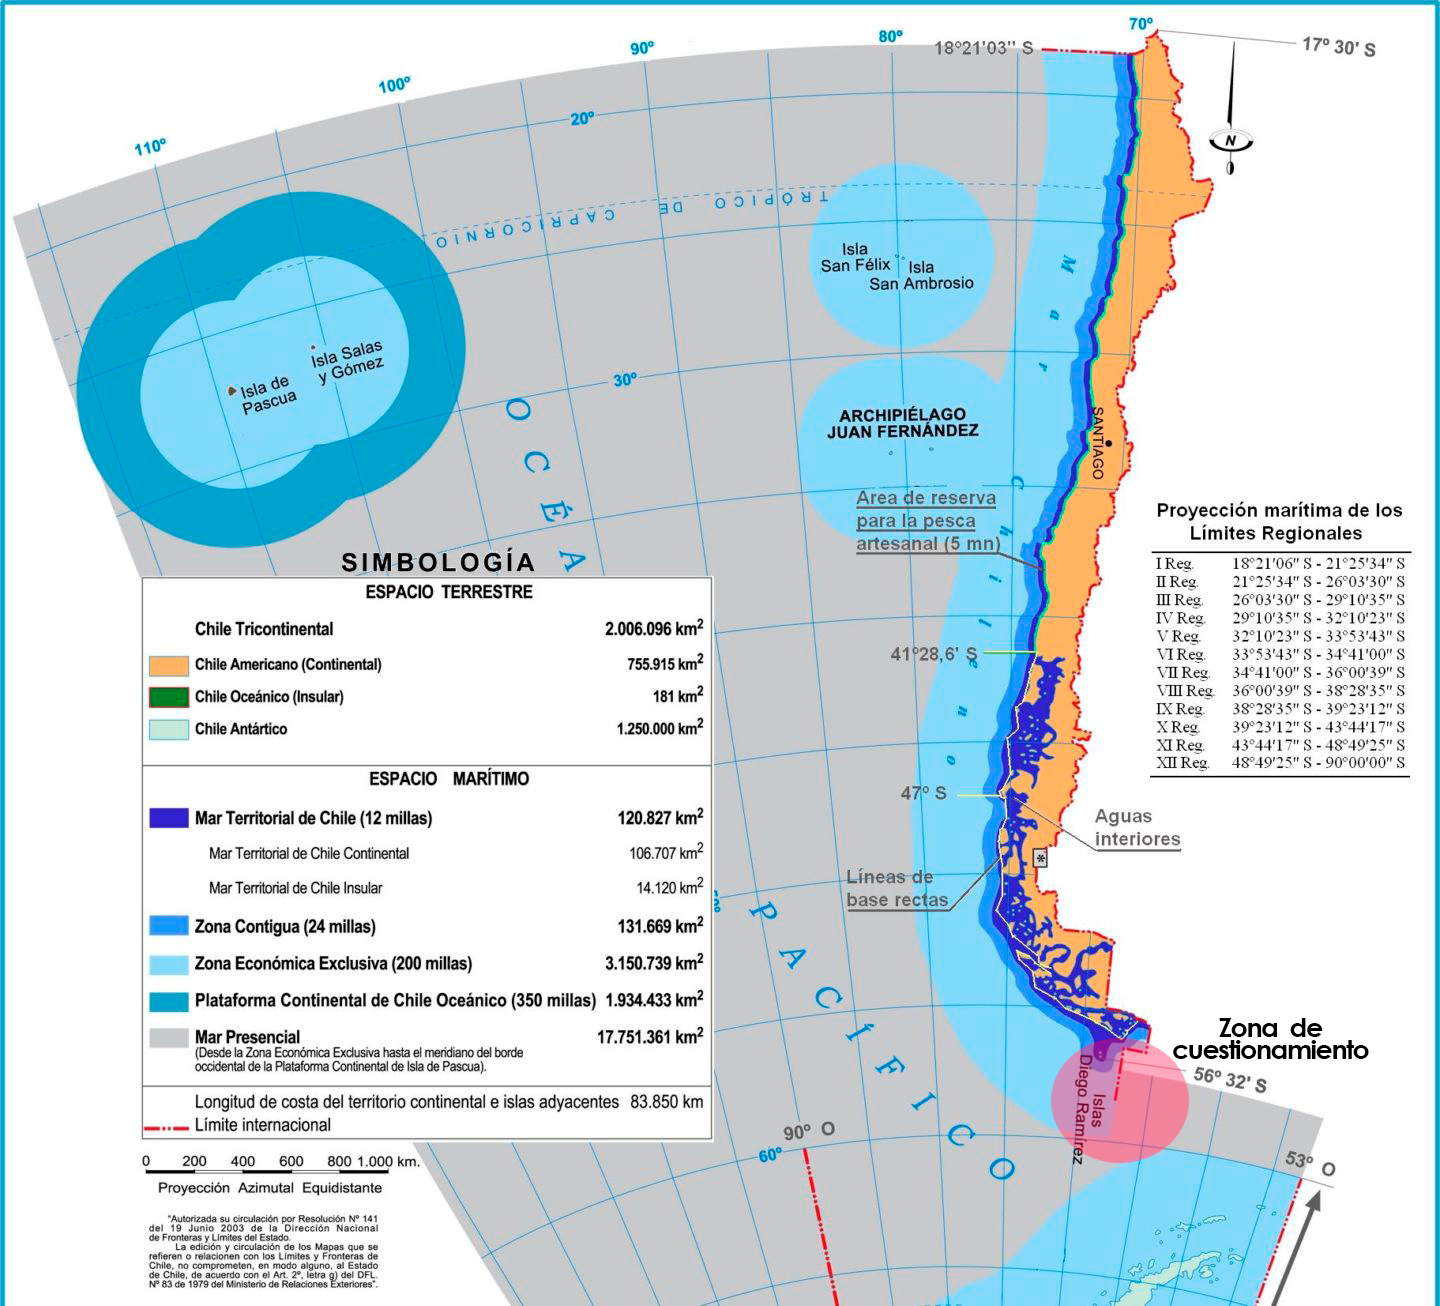 Visualización del mapa chileno sobre el Mar Austral y el punto de conflicto